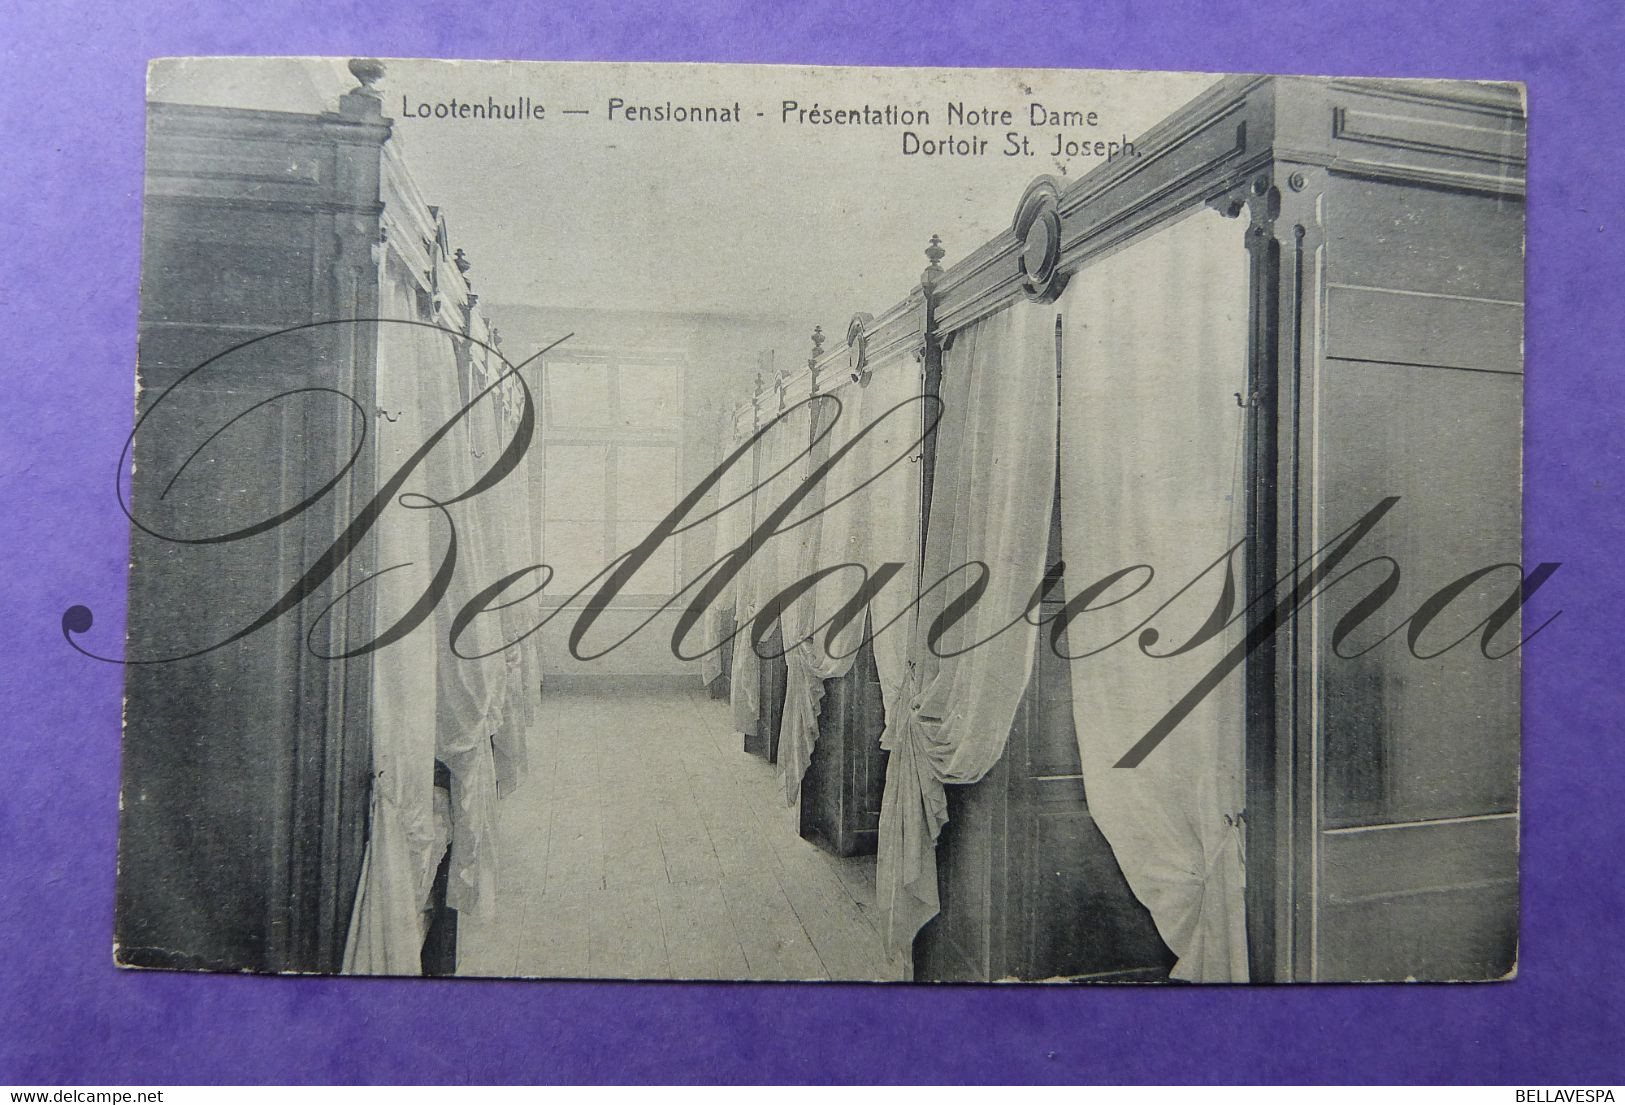 Lootenhulle. Aalter. Pensionnat Dortoir St Joseph. 1914 - Aalter